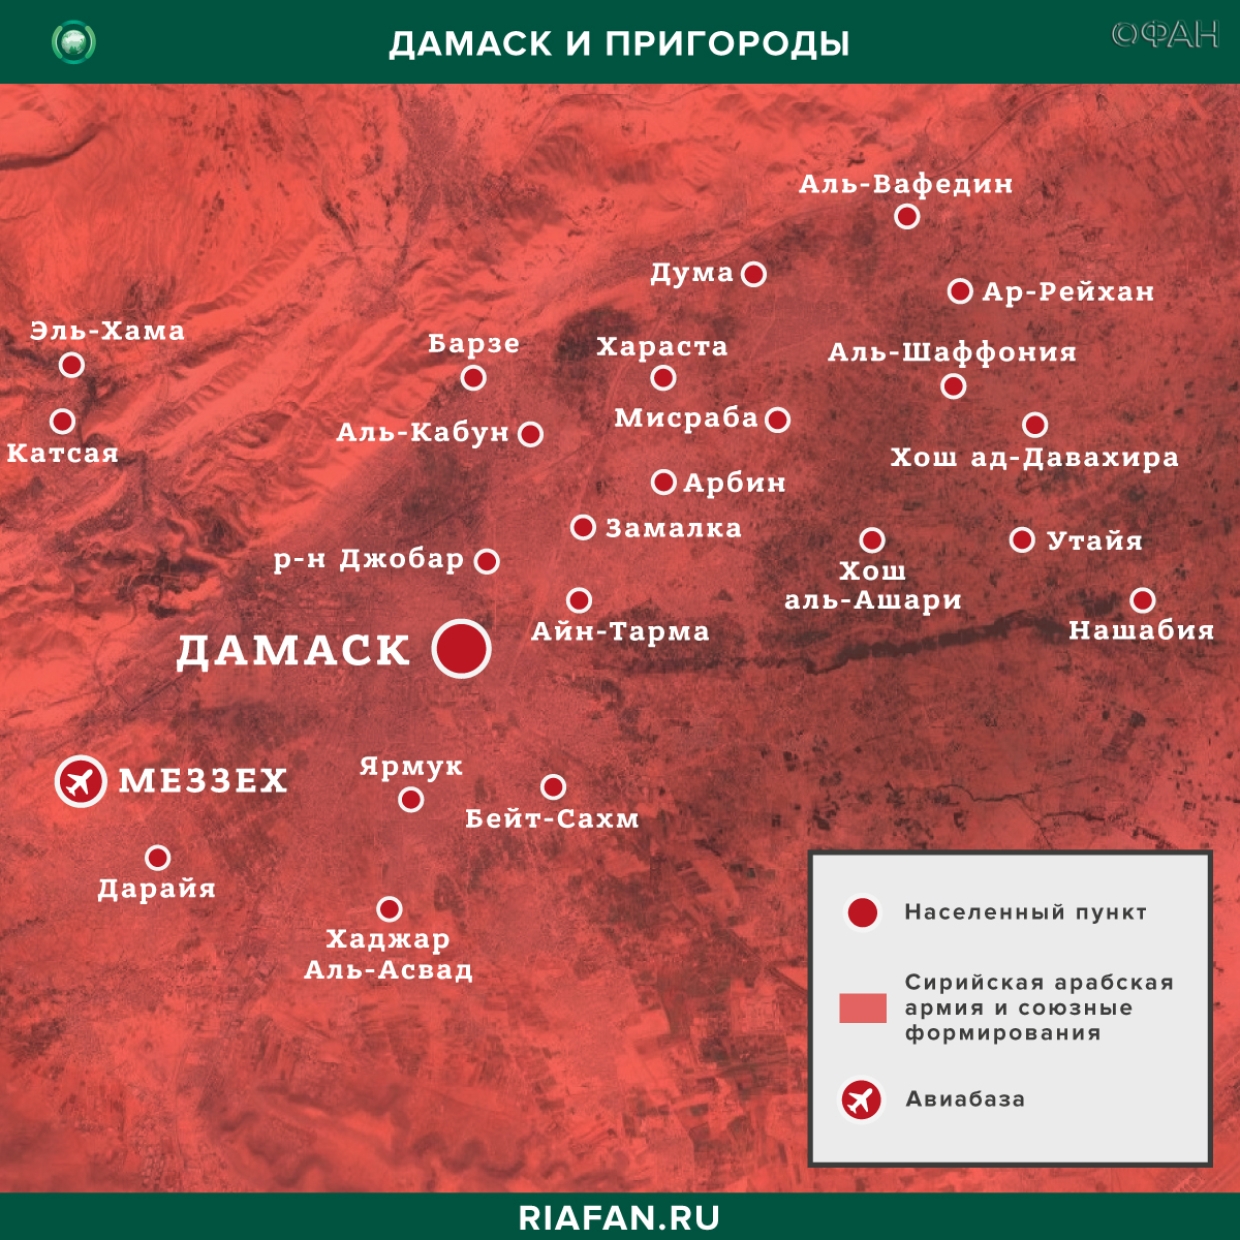 叙利亚每日结果 27 二月 06.00: взрыв в Дамаске, сирийская армия освободила свыше 30 поселений Идлиба